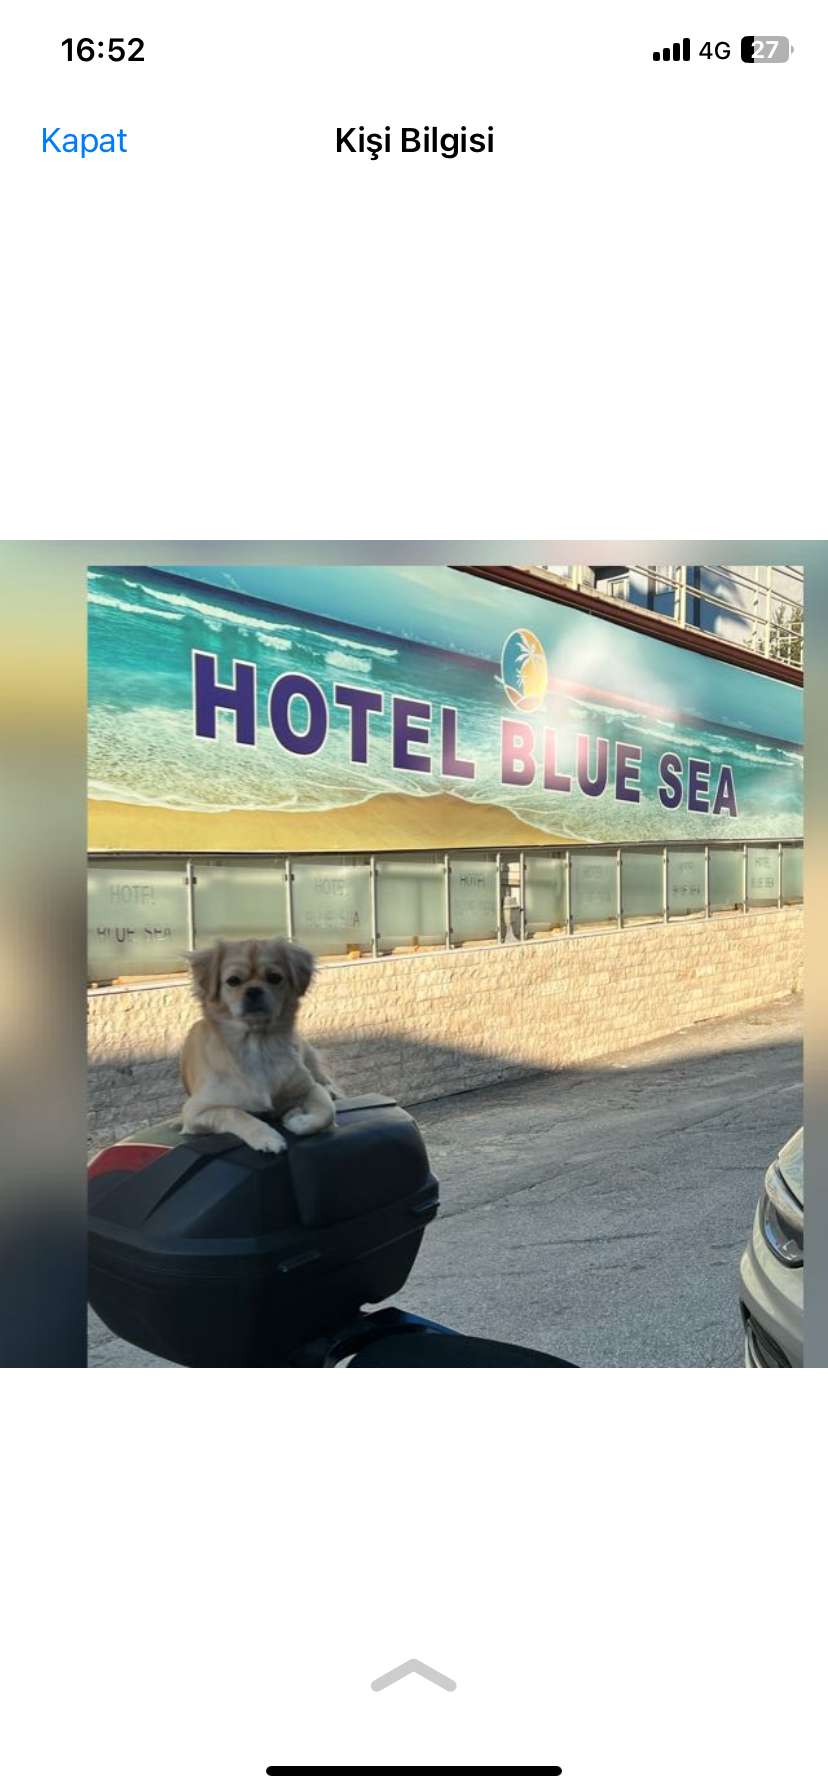  pekinez köpeğim Kimba Kadınlar denizinde hotel Bluesea önünden kayıp oldu bulana ödül verilecektir